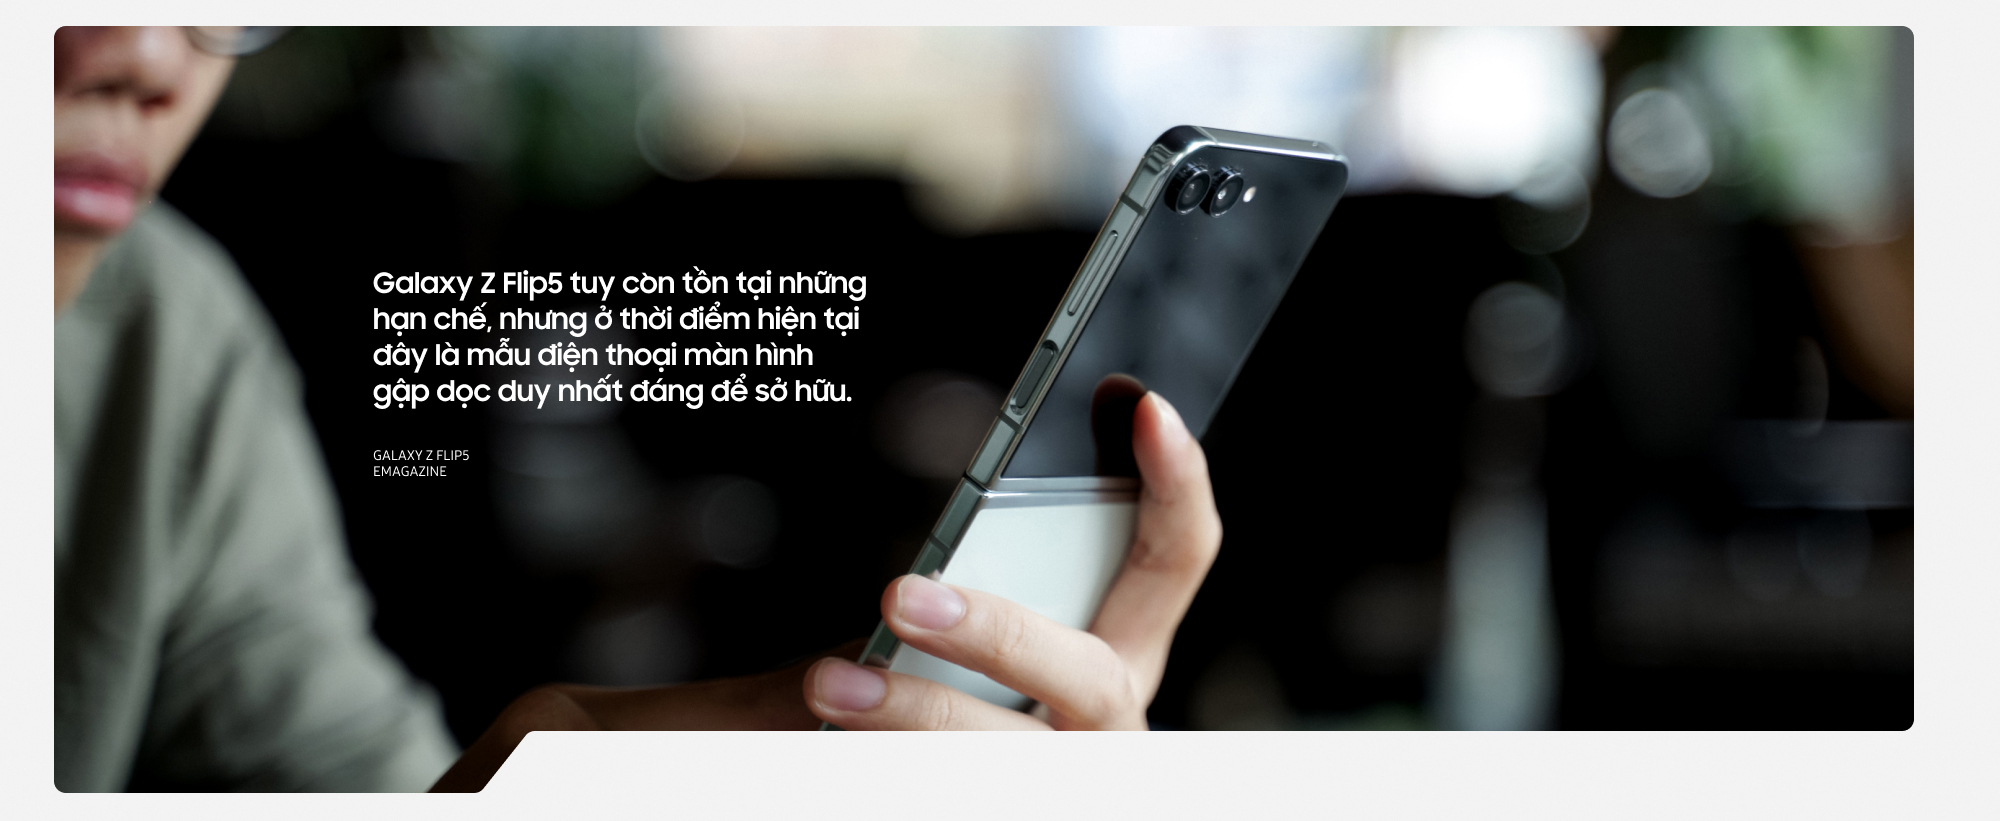 Đánh giá Galaxy Z Flip5: Thích thì mua, không thích thì… cũng vẫn phải mua - Ảnh 13.